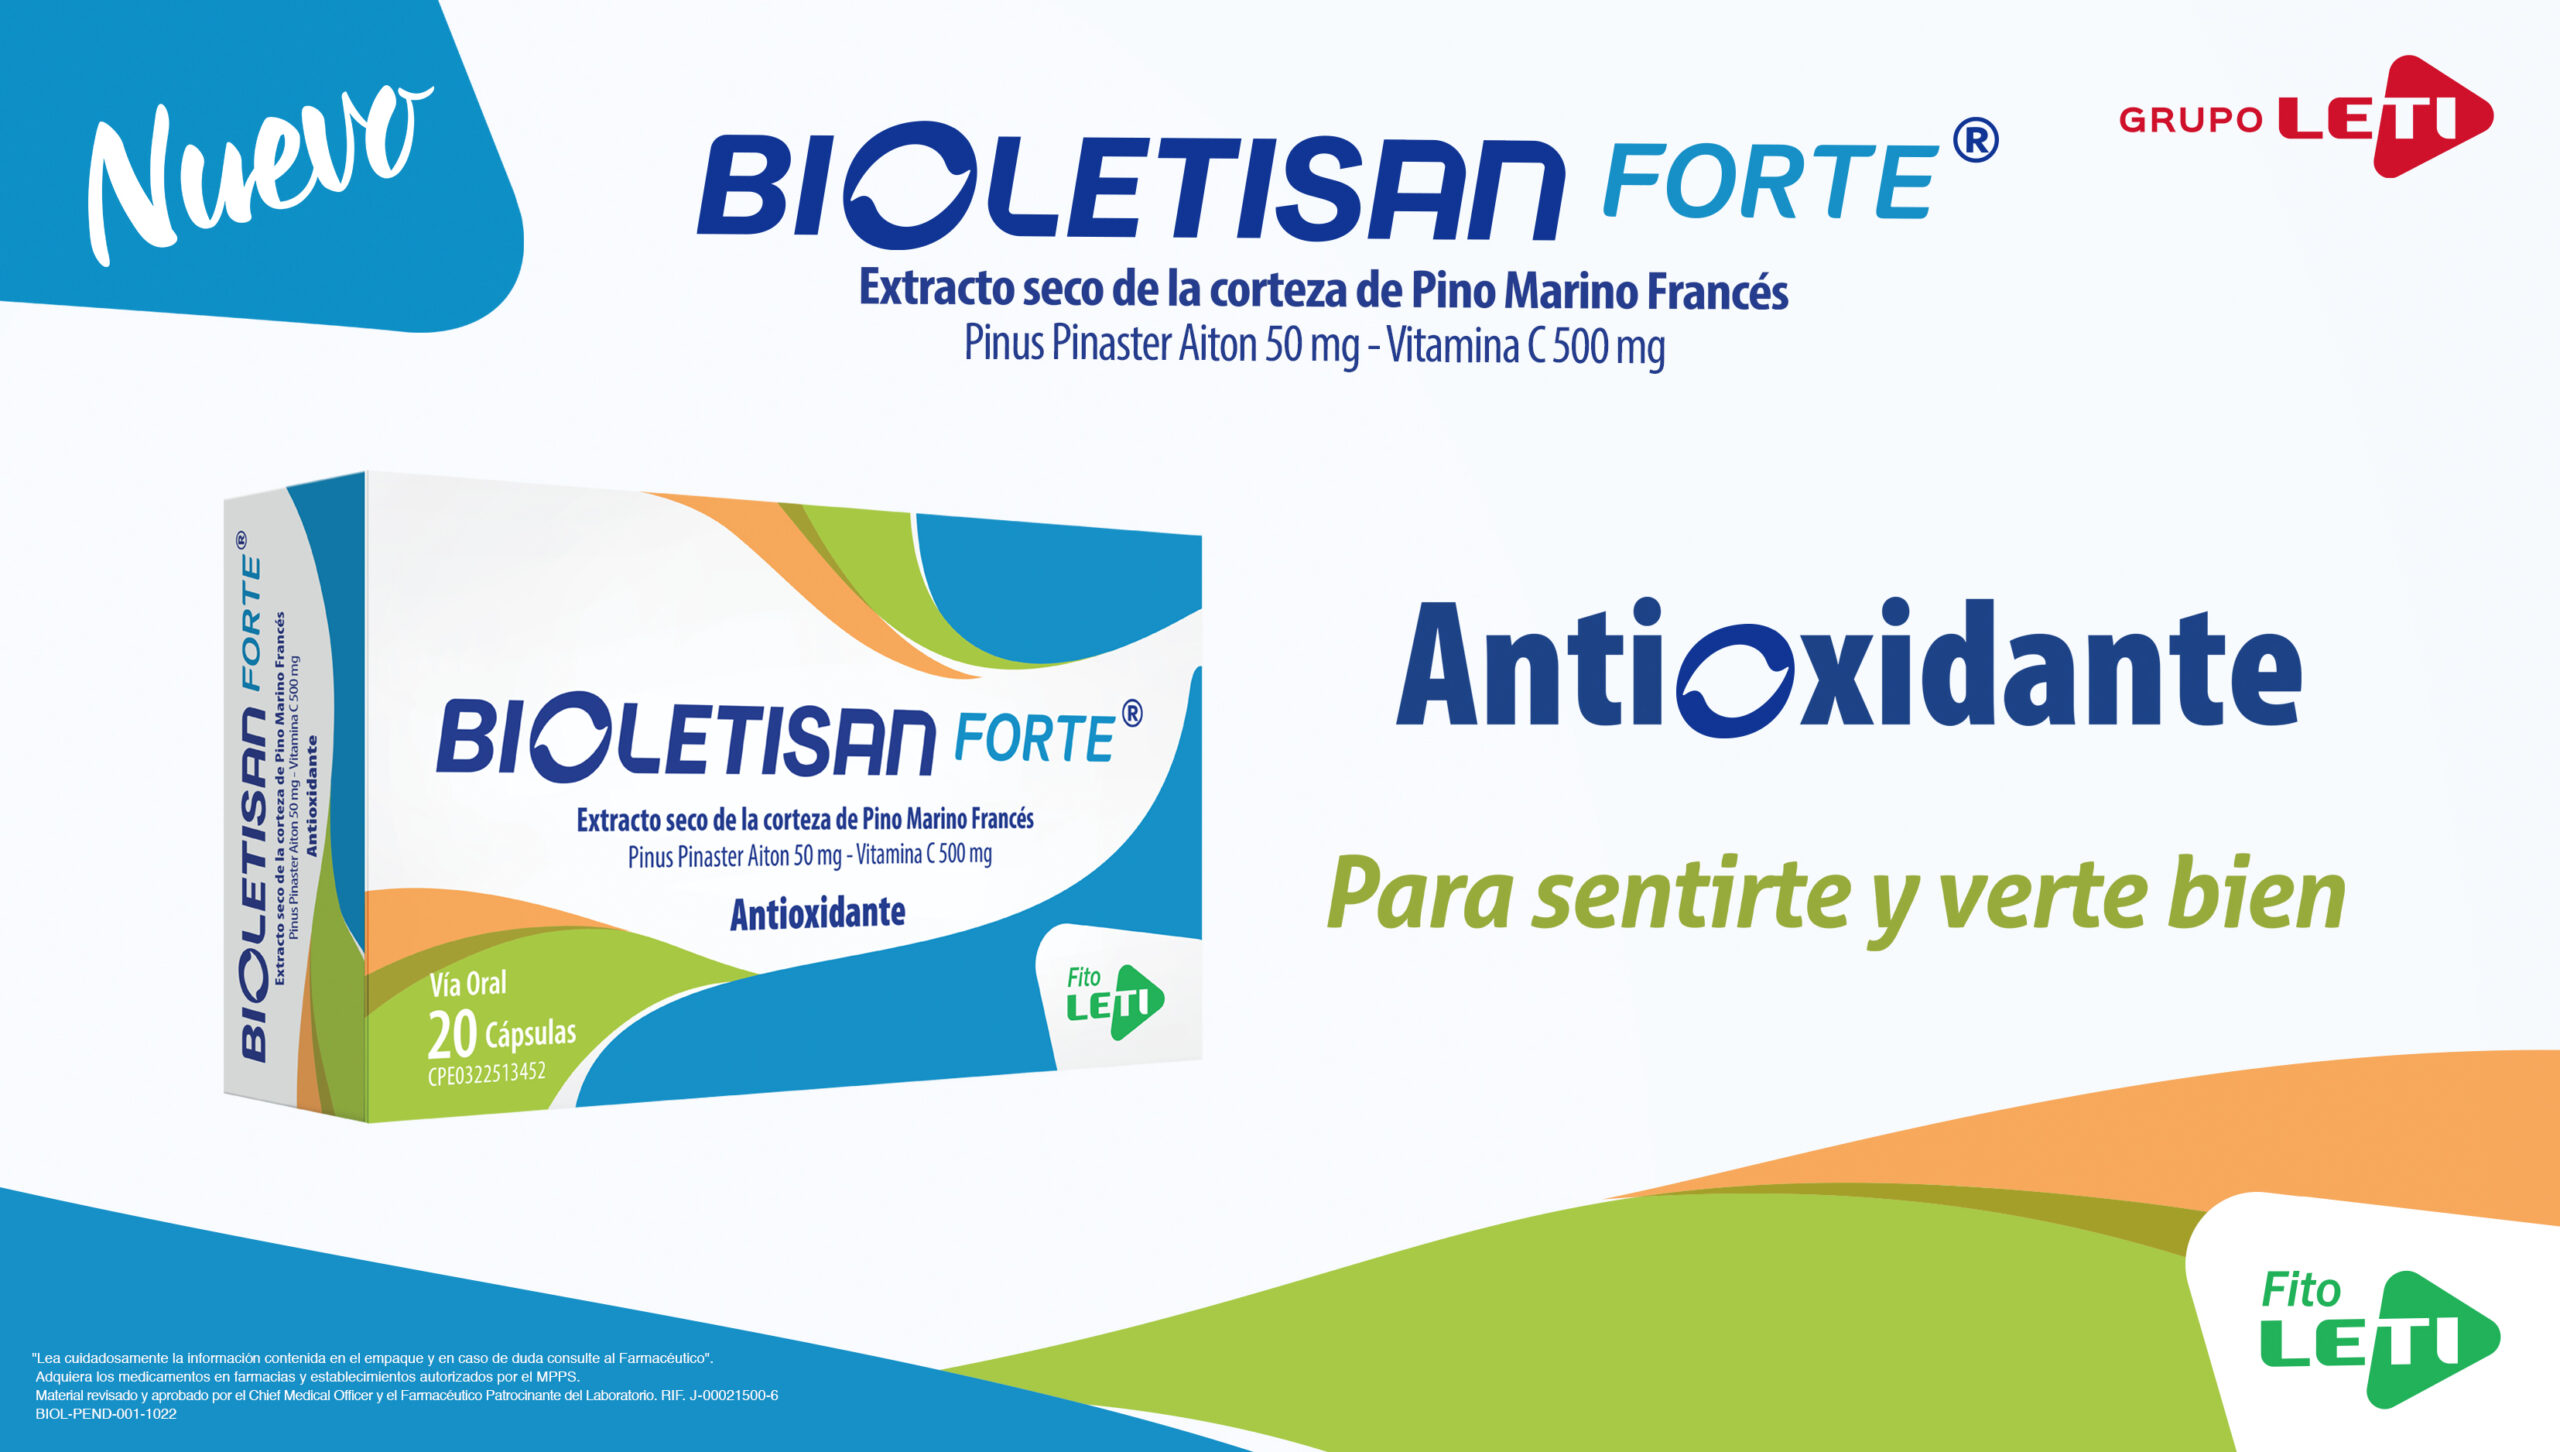 Grupo LETI lanza una innovadora combinación al mercado farmacéutico con su nuevo producto BIOLETISAN FORTE